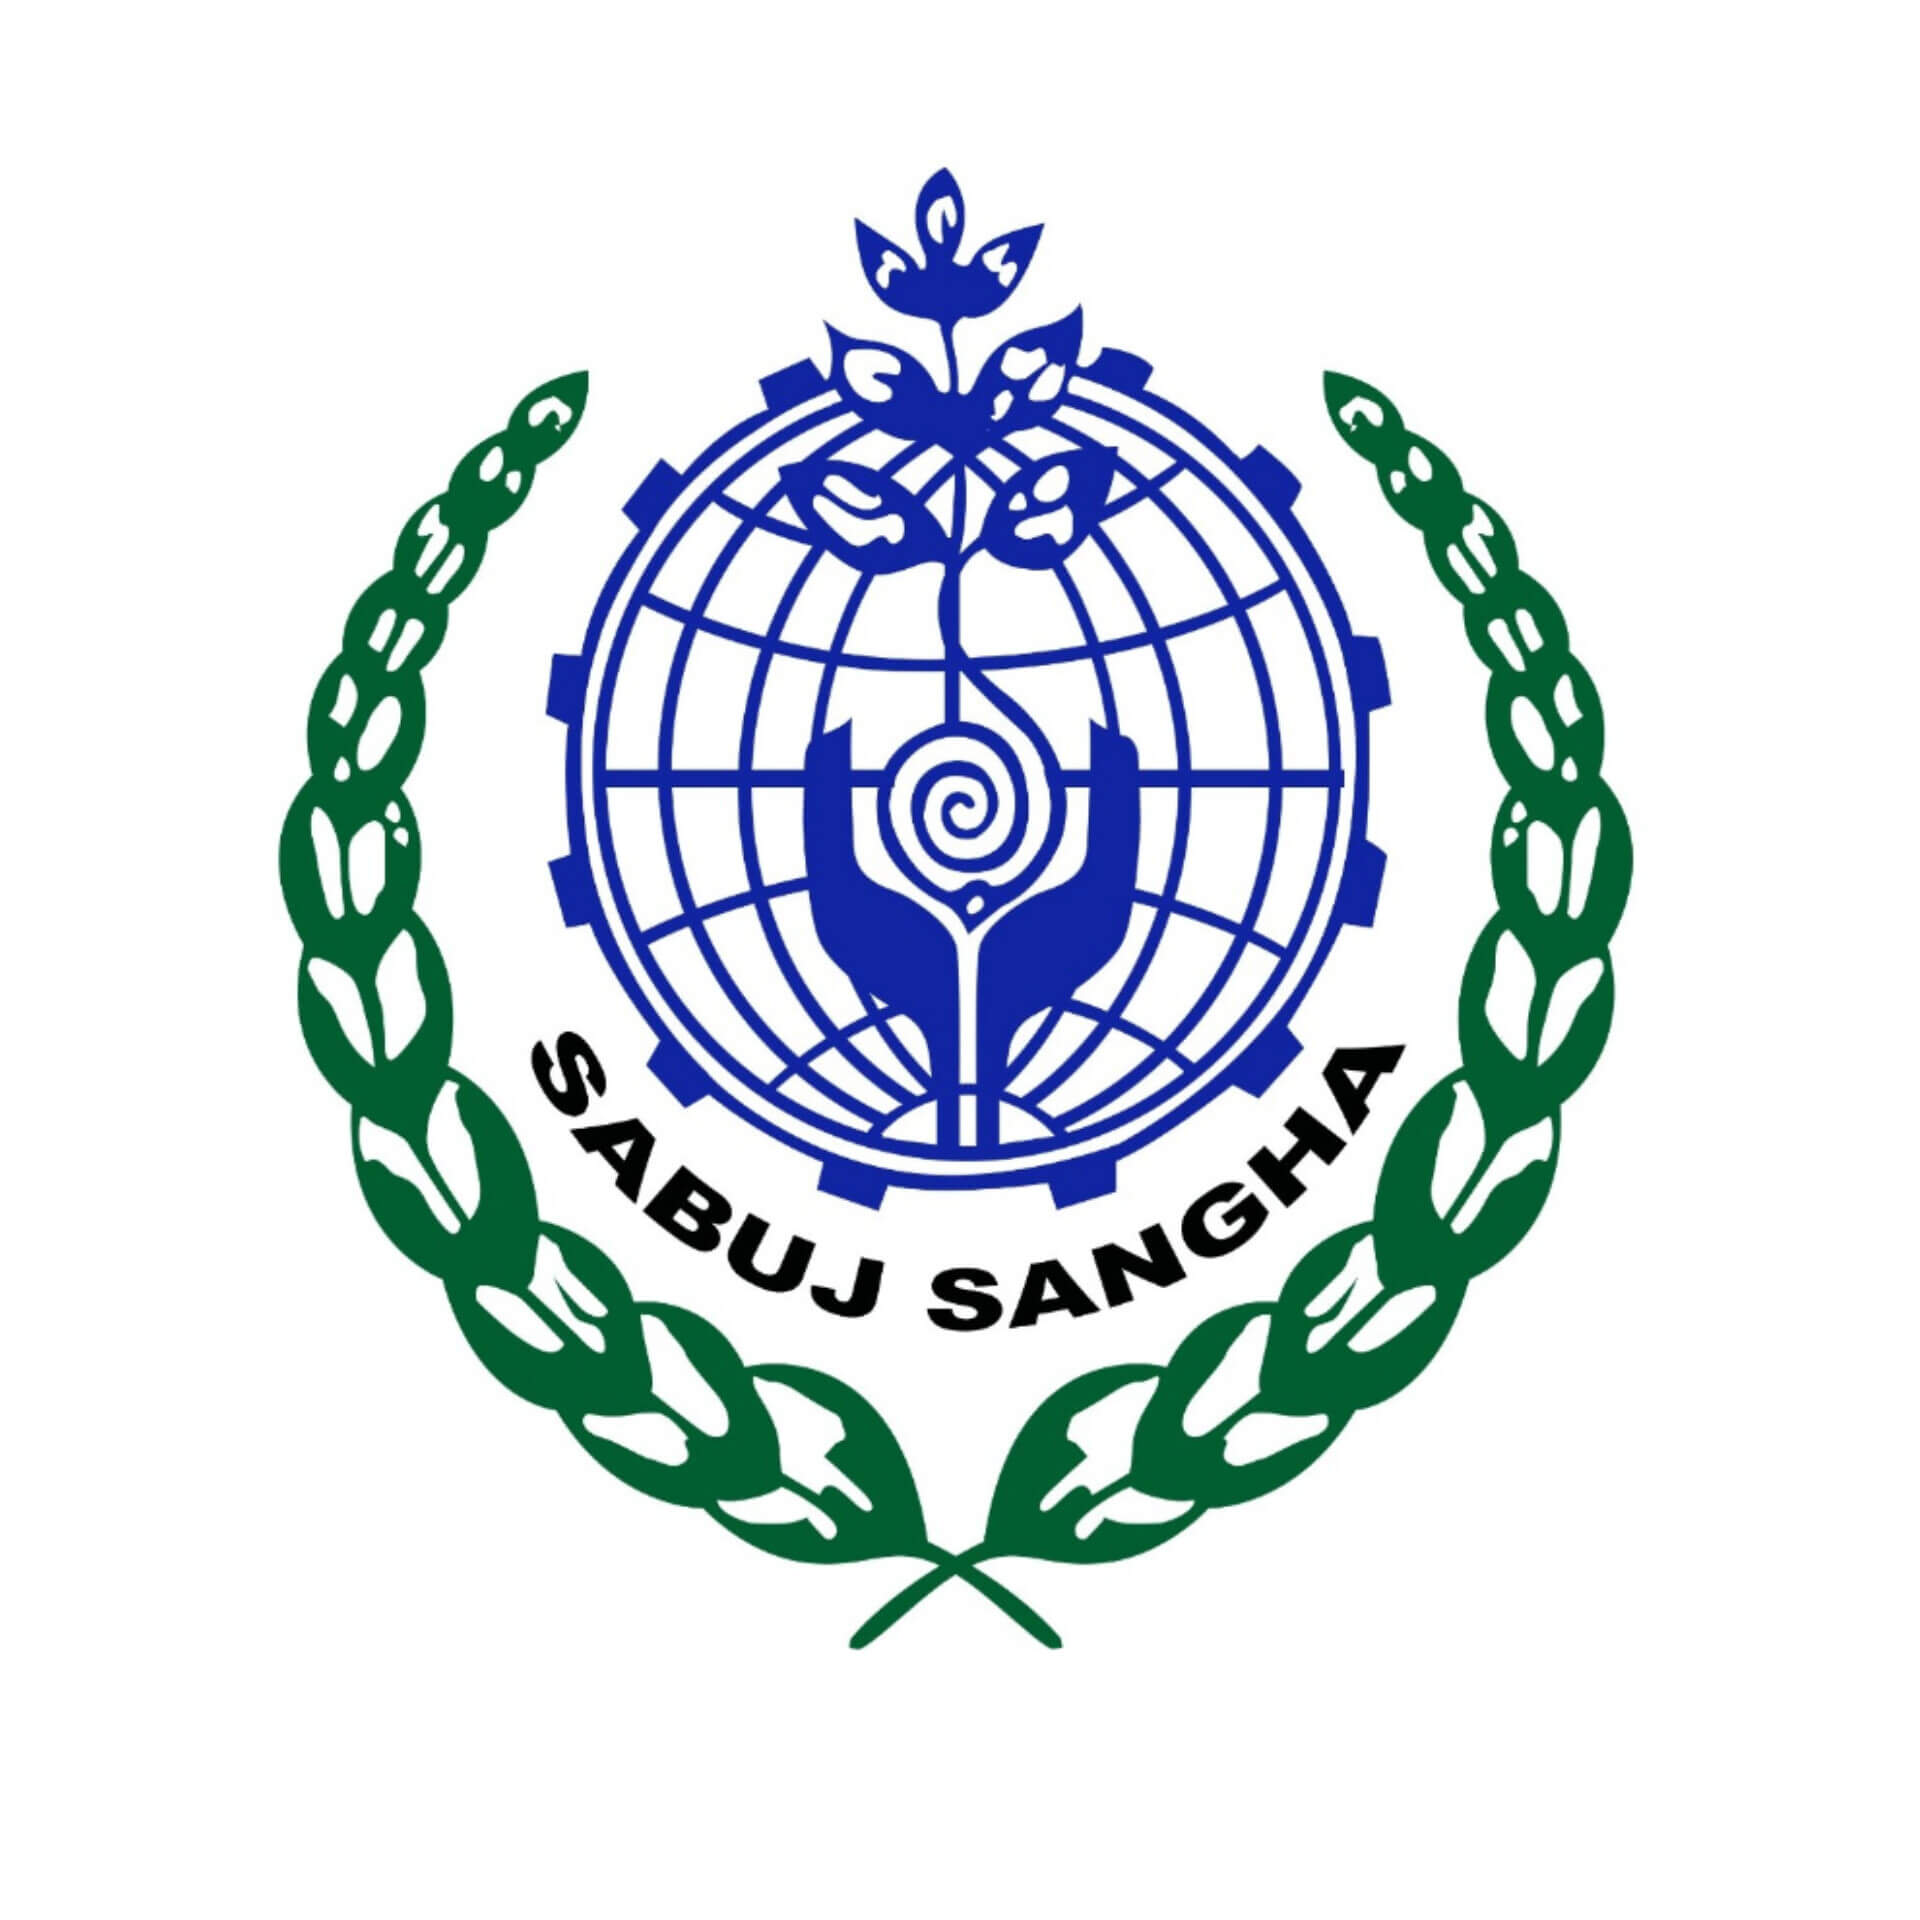 Sabuj Sangha